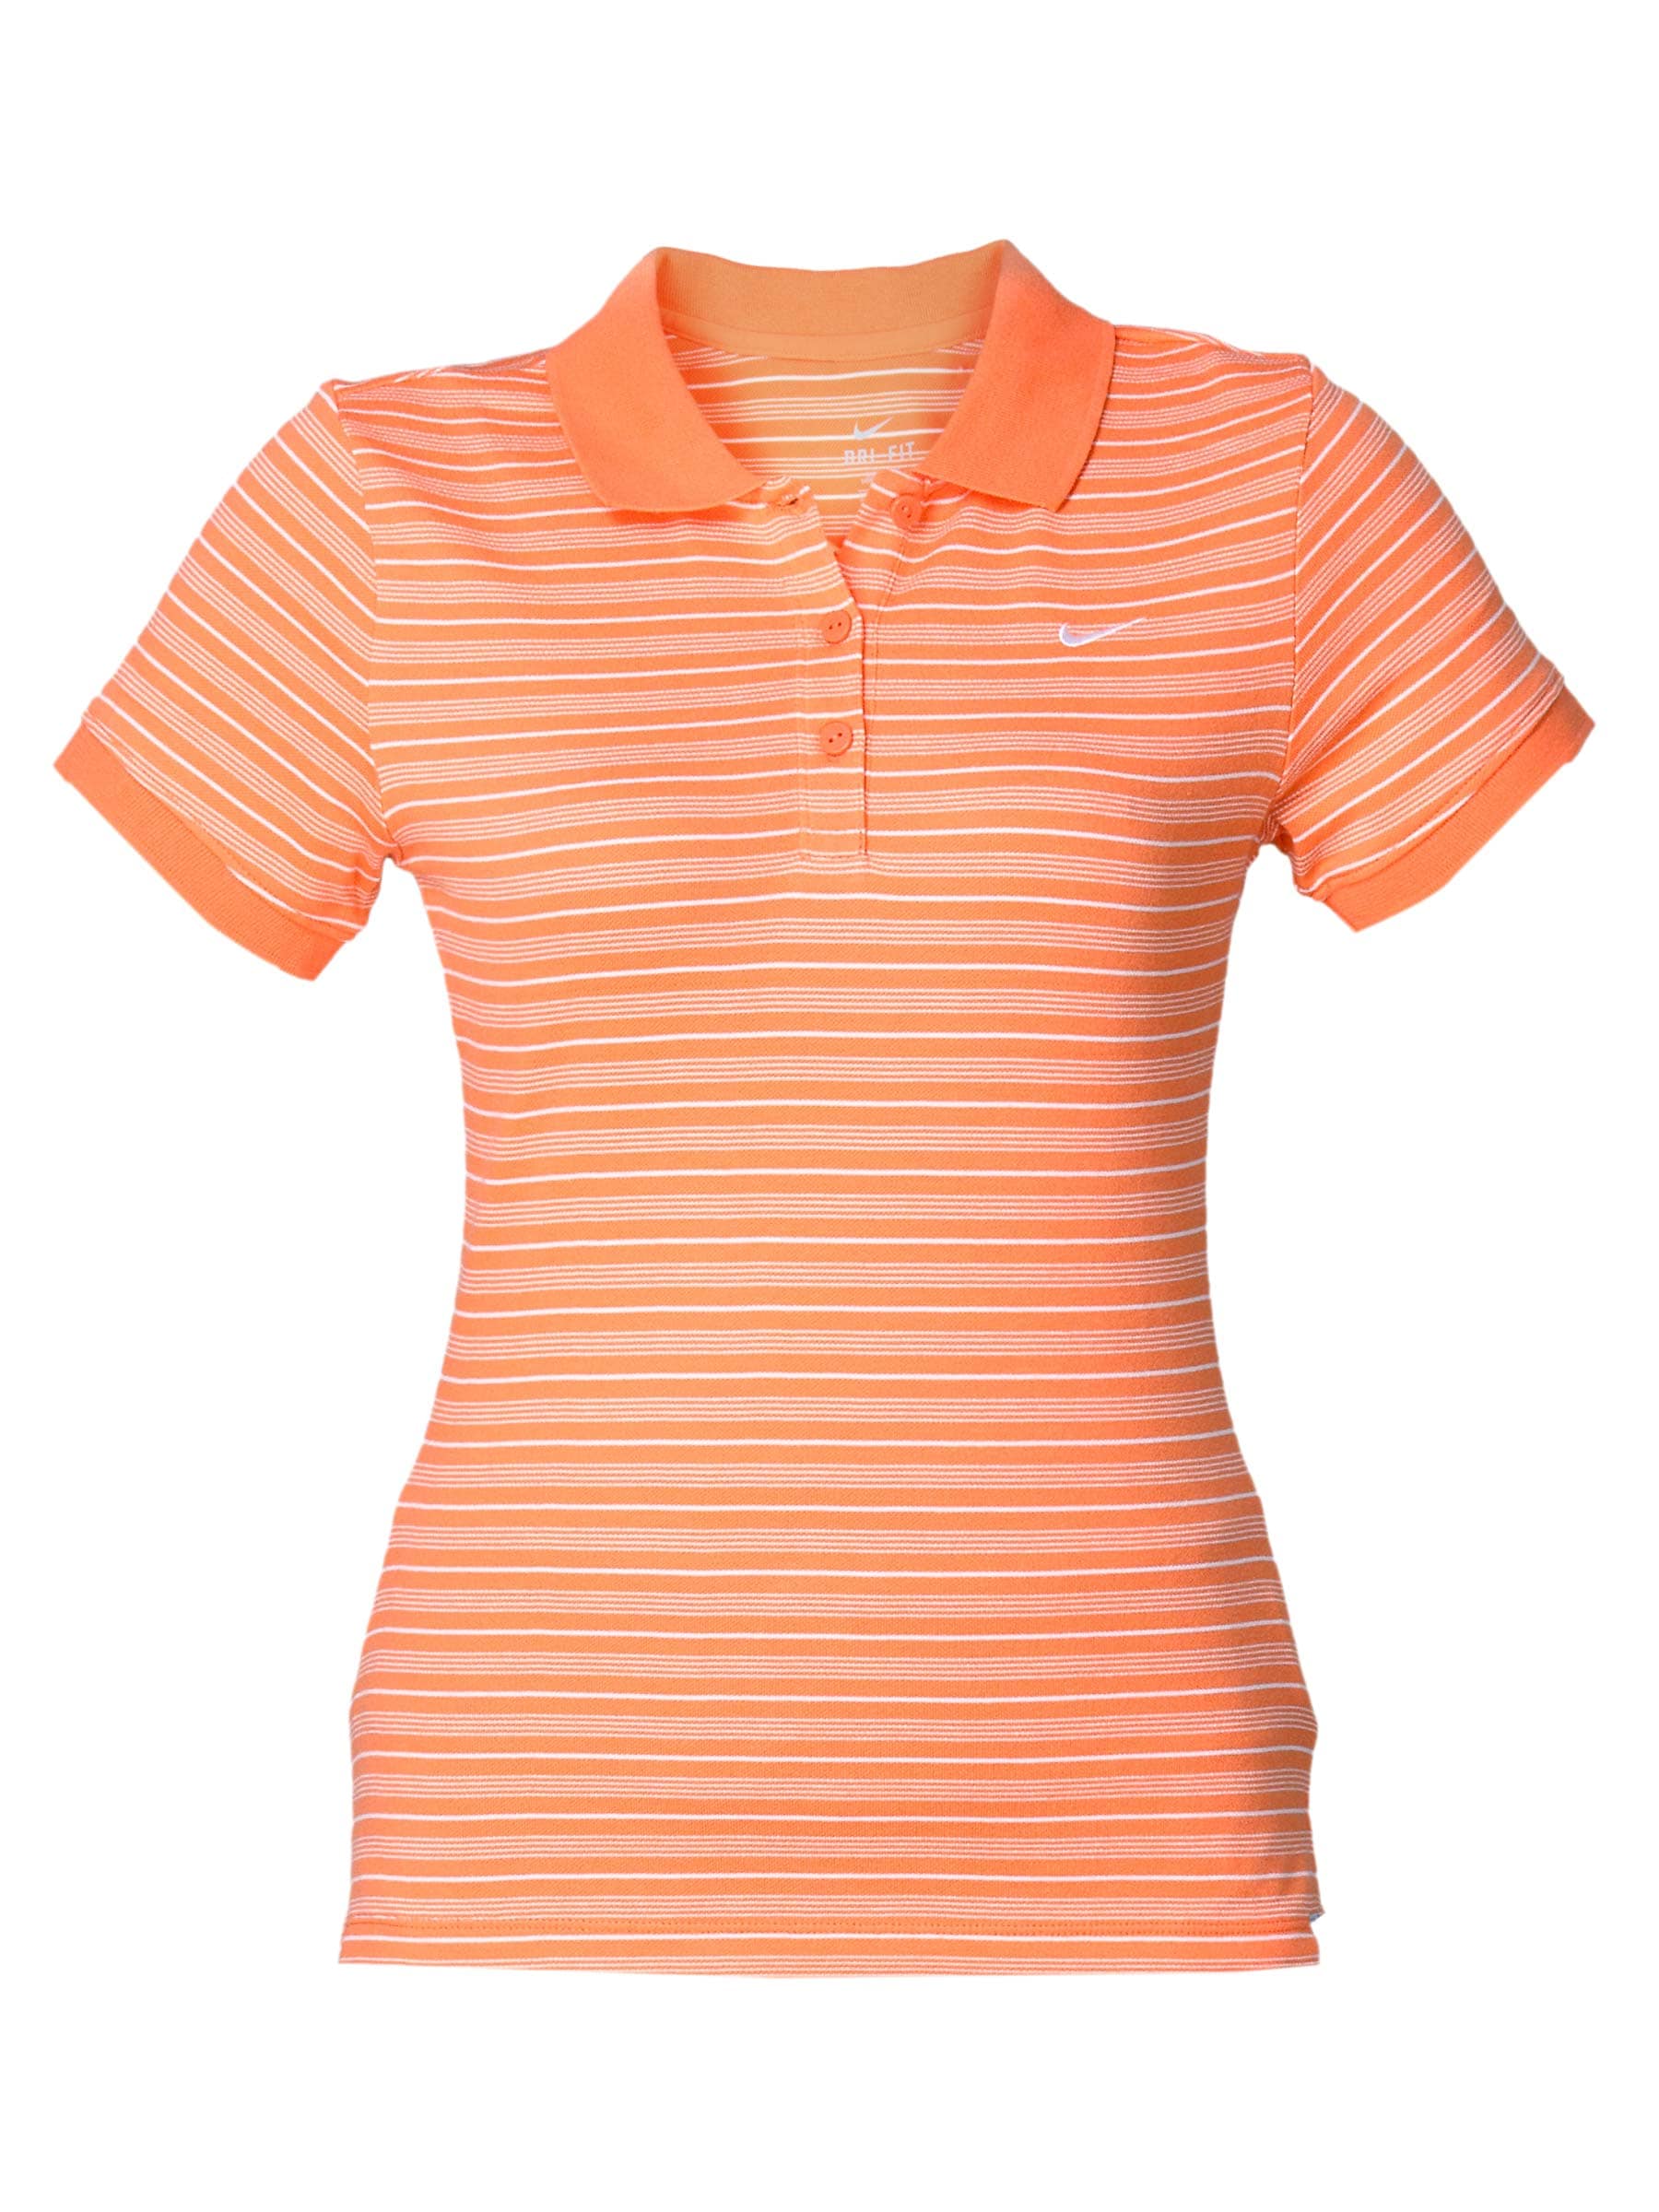 Nike Women's Peach Polo T-shirt